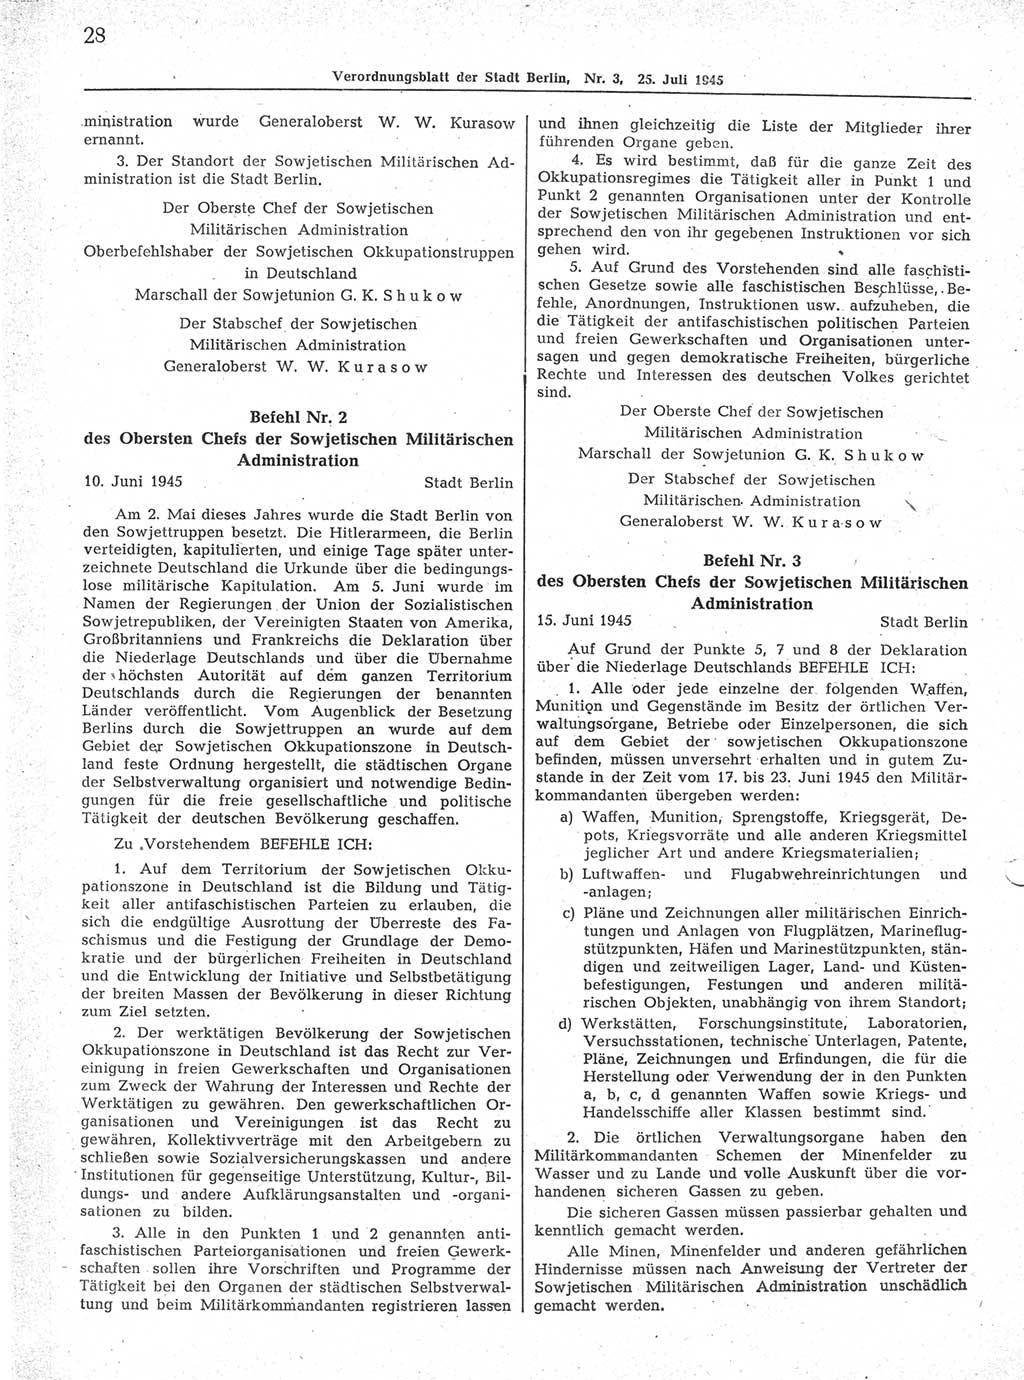 Verordnungsblatt (VOBl.) der Stadt Berlin 1945, Seite 28 (VOBl. Bln. 1945, S. 28)